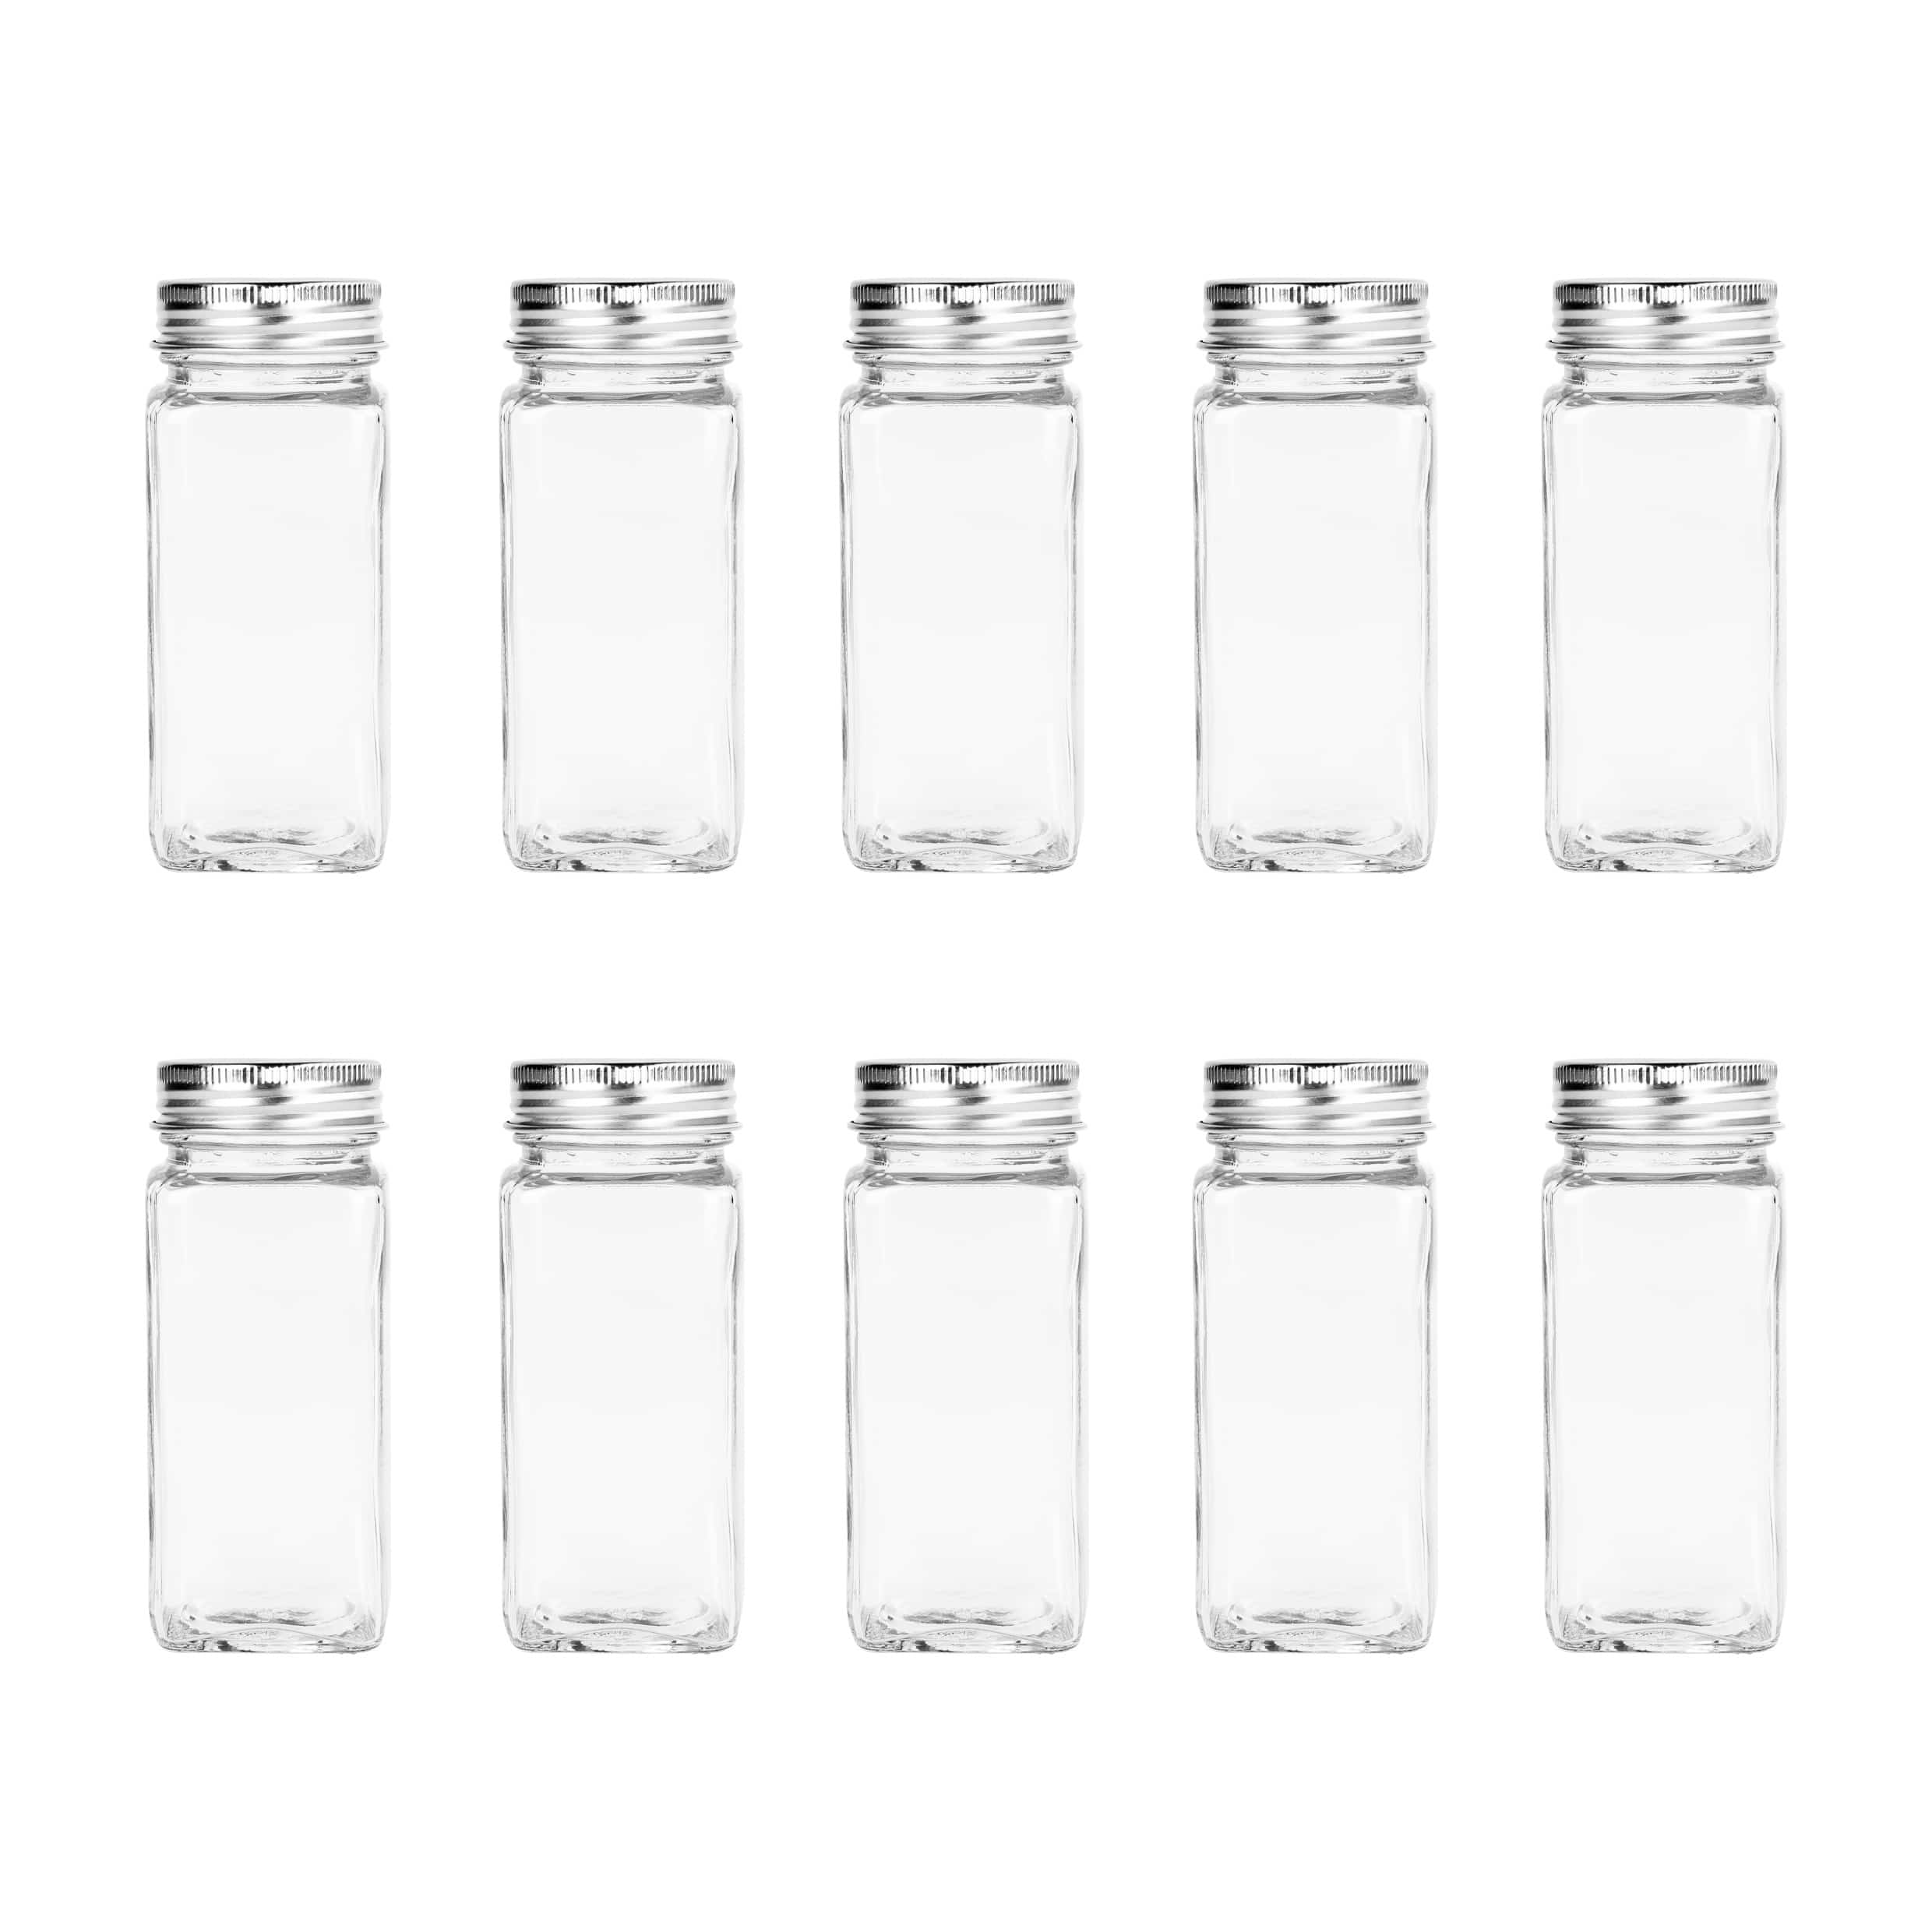 Krumble Kruidenpotten set van 10 - Kruidenpotjes - Kruidenpotjes met deksel - Kruidenpotten van glas - 120 ml - 4 x 4 x 10,5 cm (lxbxh)